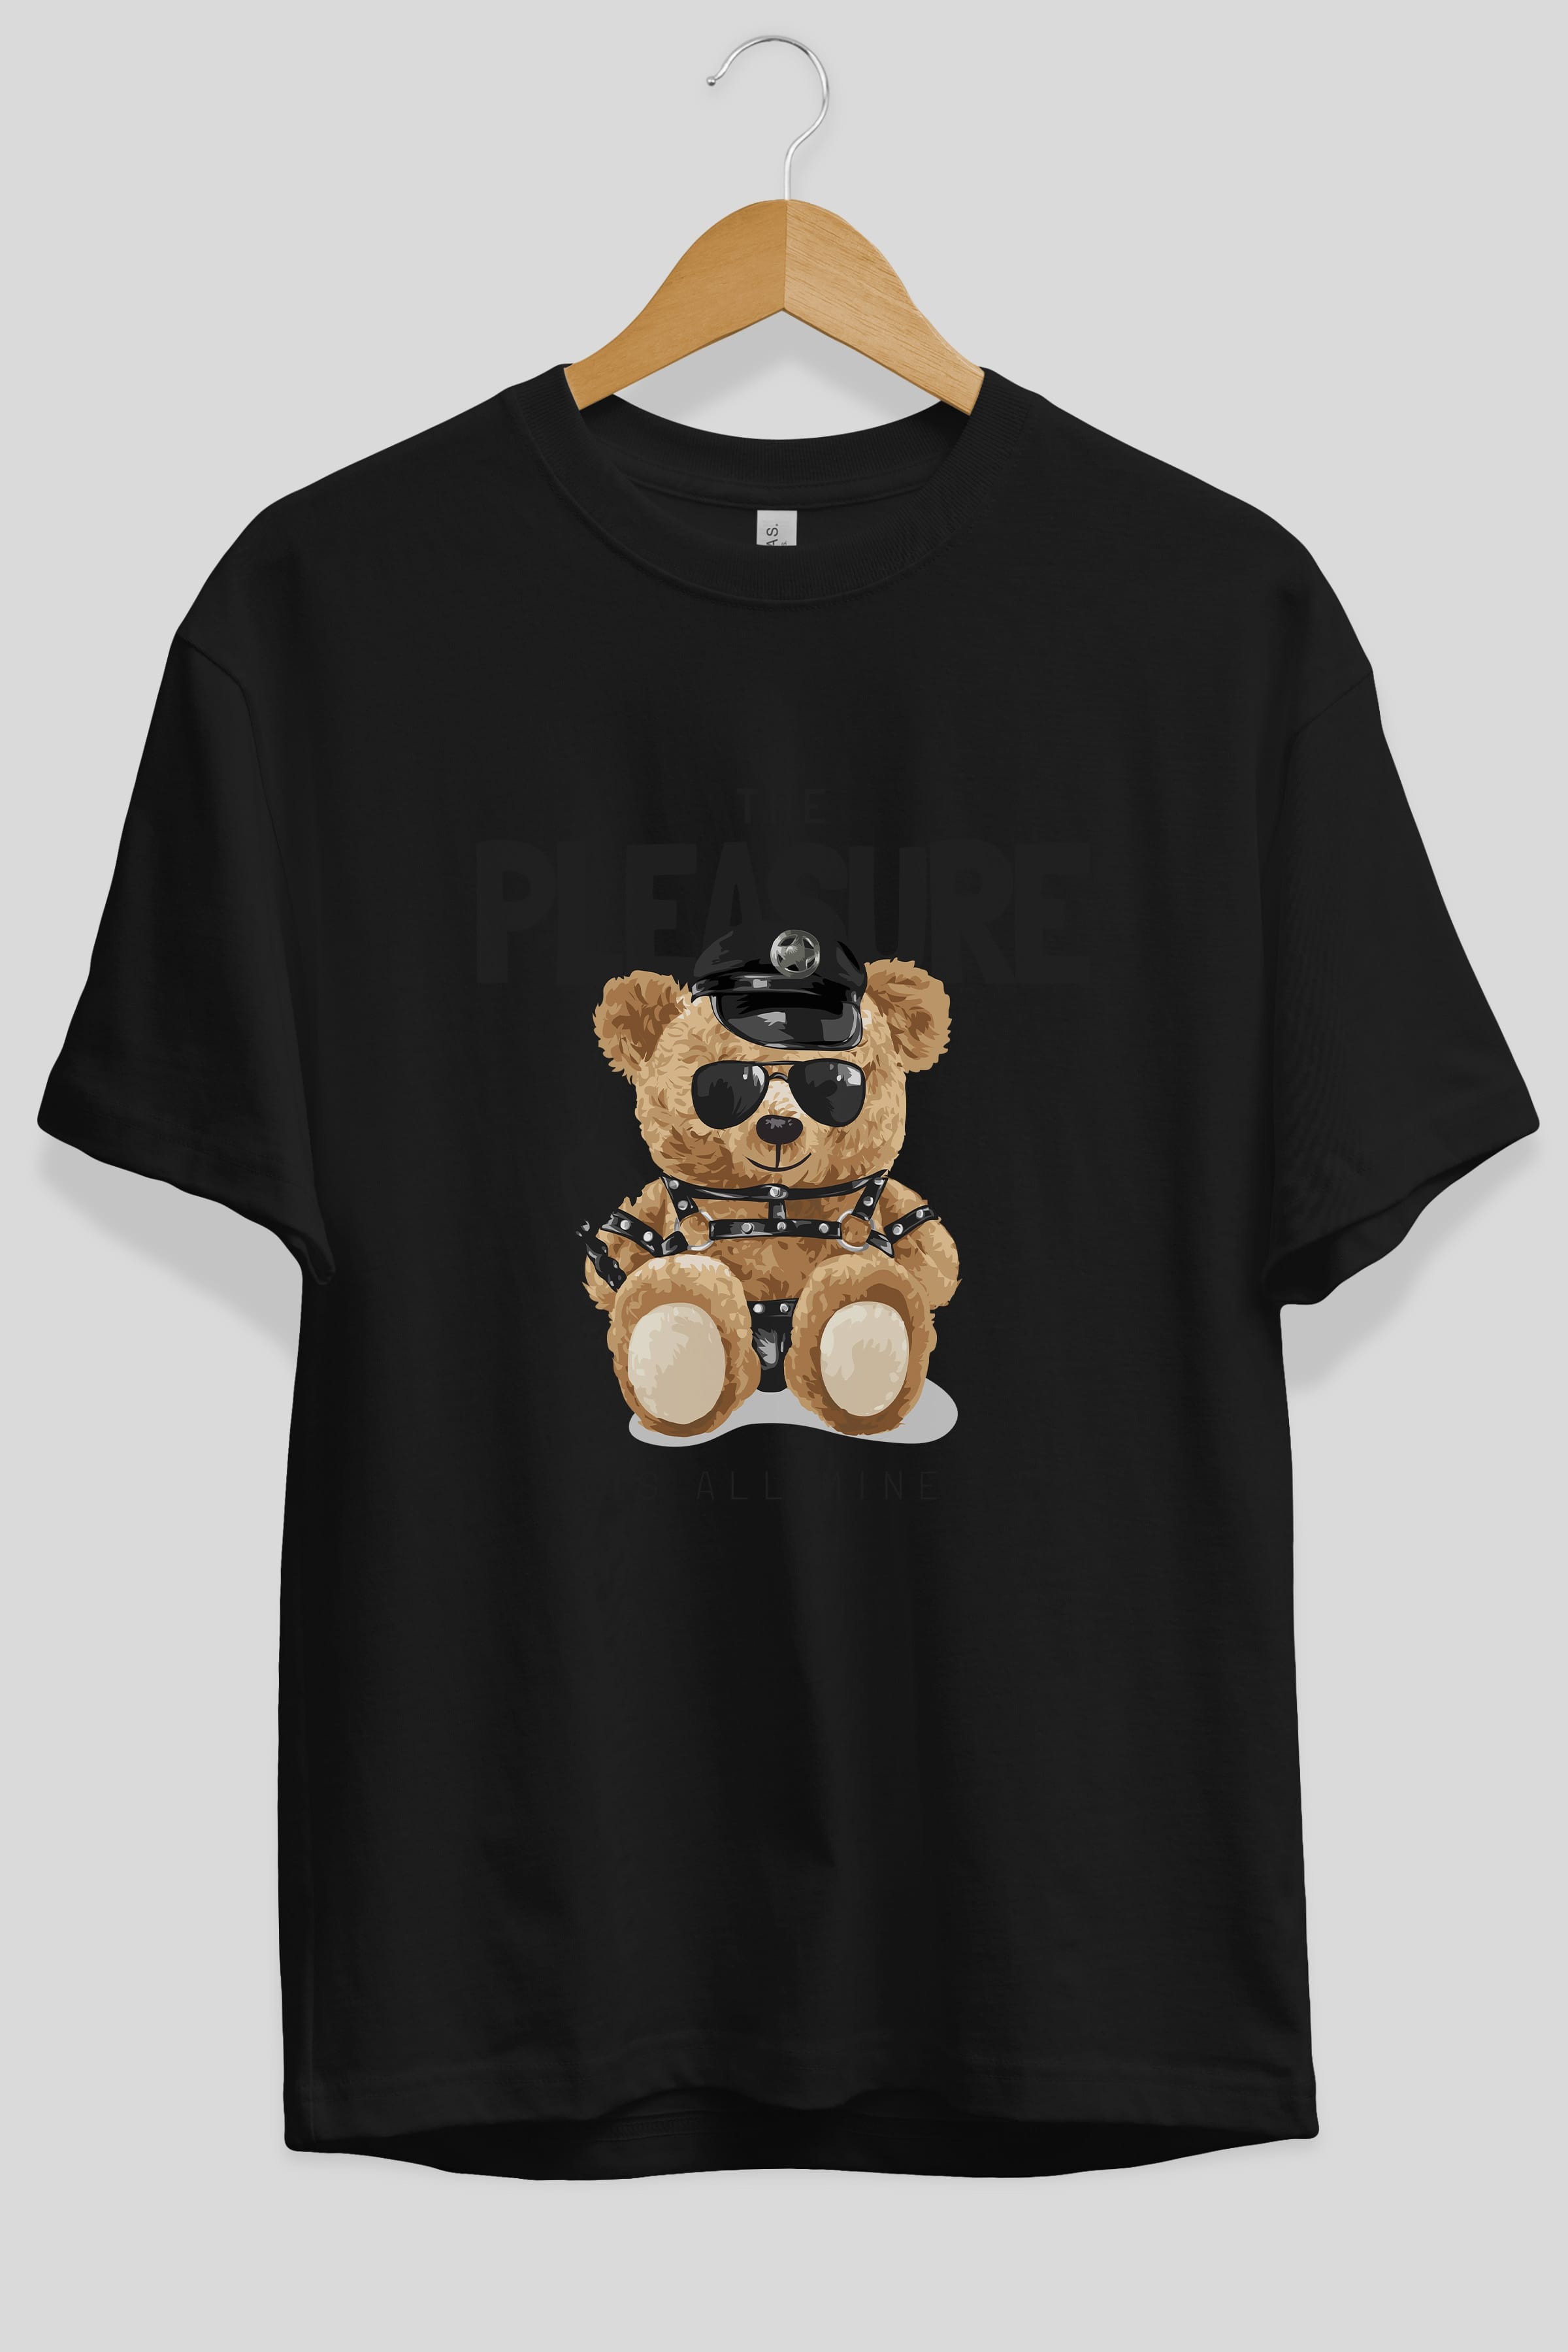 Teddy Bear The Pleasure Ön Baskılı Oversize t-shirt Erkek Kadın Unisex %100 Pamuk